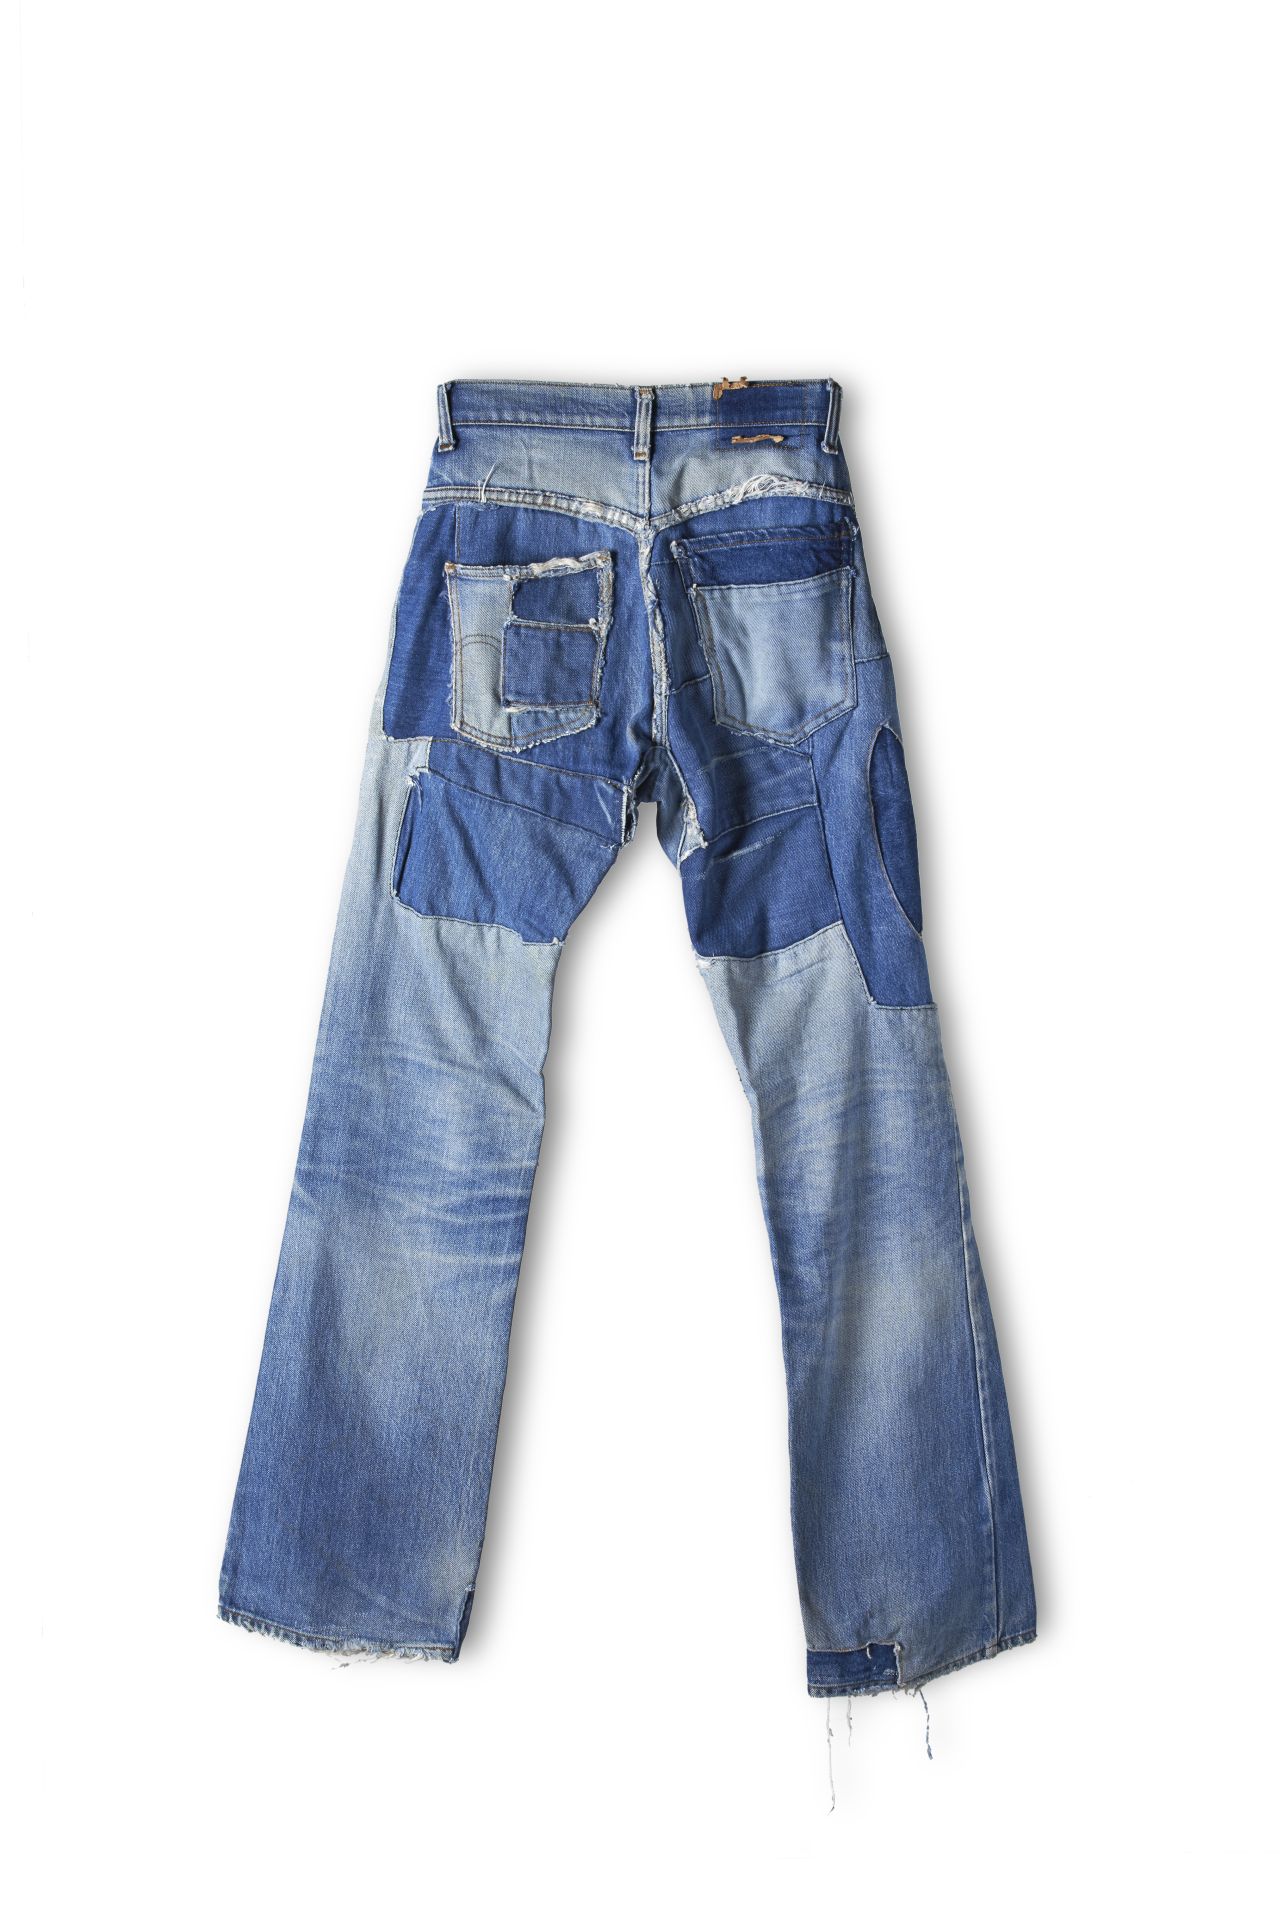 Blaue Jeanshose mit 5 Taschen, viele auf- und eingenähte Jeansflecken in unterschiedlichen Blautönen im Bereich der Oberschenkel, Knie und des Saums.